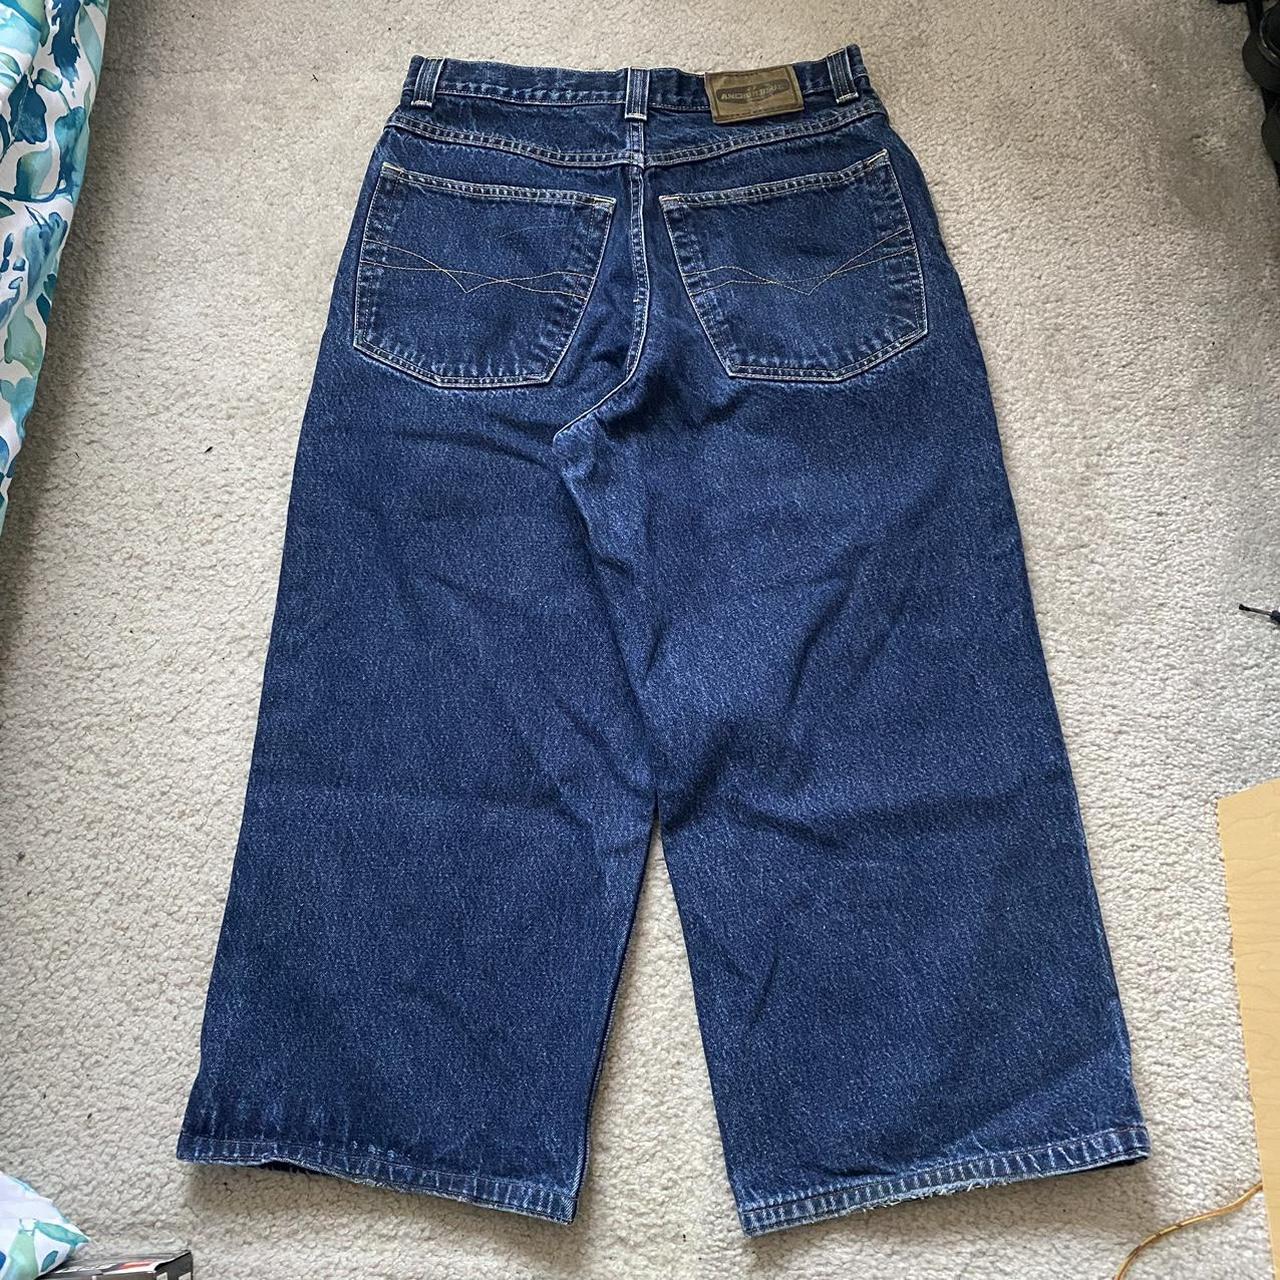 vintage anchor blue huge jeans barely worn and... - Depop